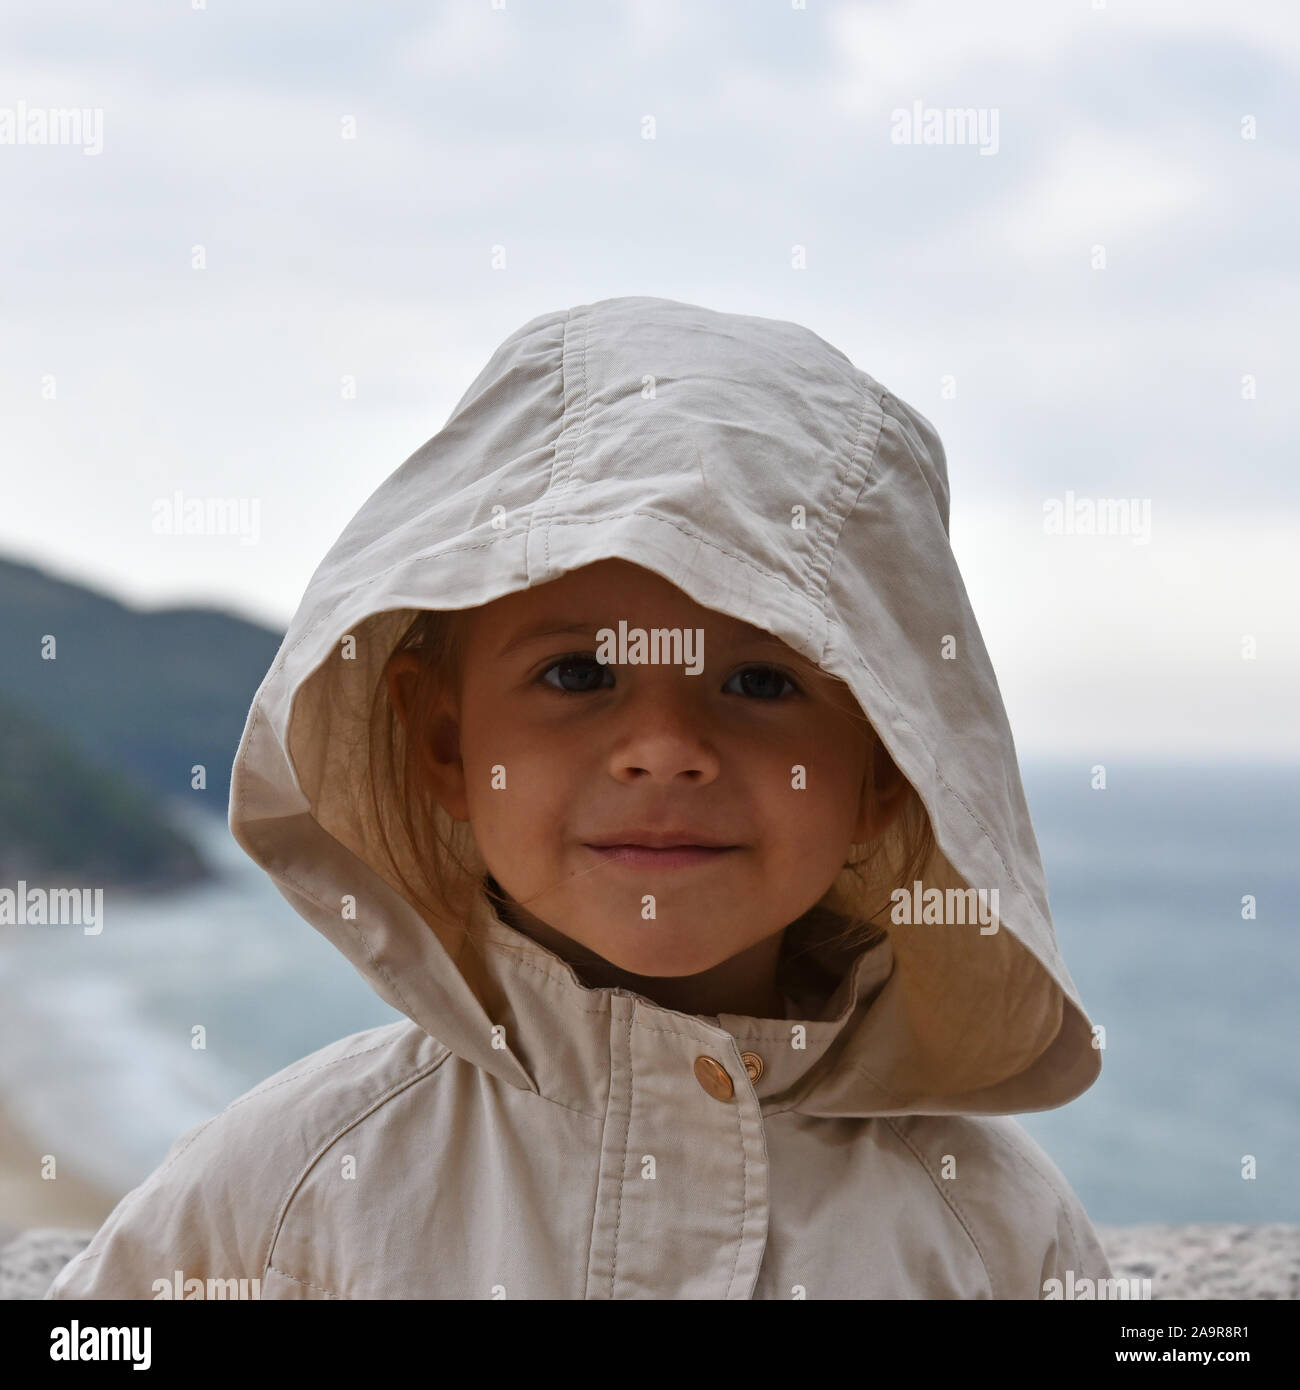 Ein kleines Mädchen trägt ein regenmantel Jacke mit Kapuze gegen einen stürmischen Himmel. Magnetische und intensiven Blick. Kindheit Konzepte. Ökologische Konzepte. Clim Stockfoto